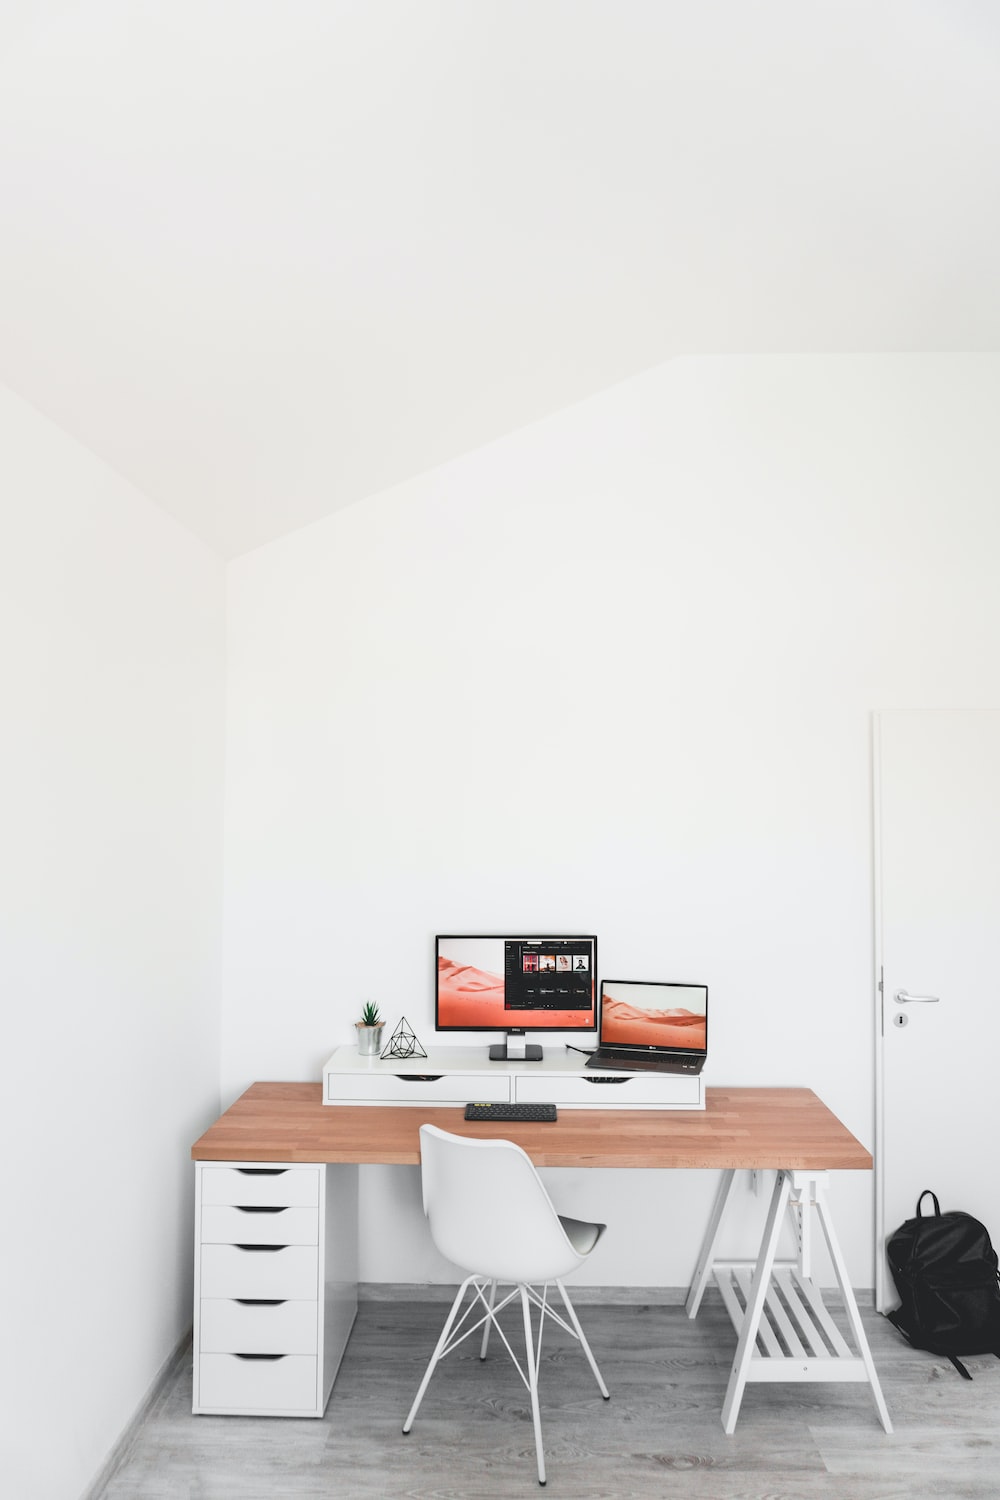 How do I setup a home office desk?